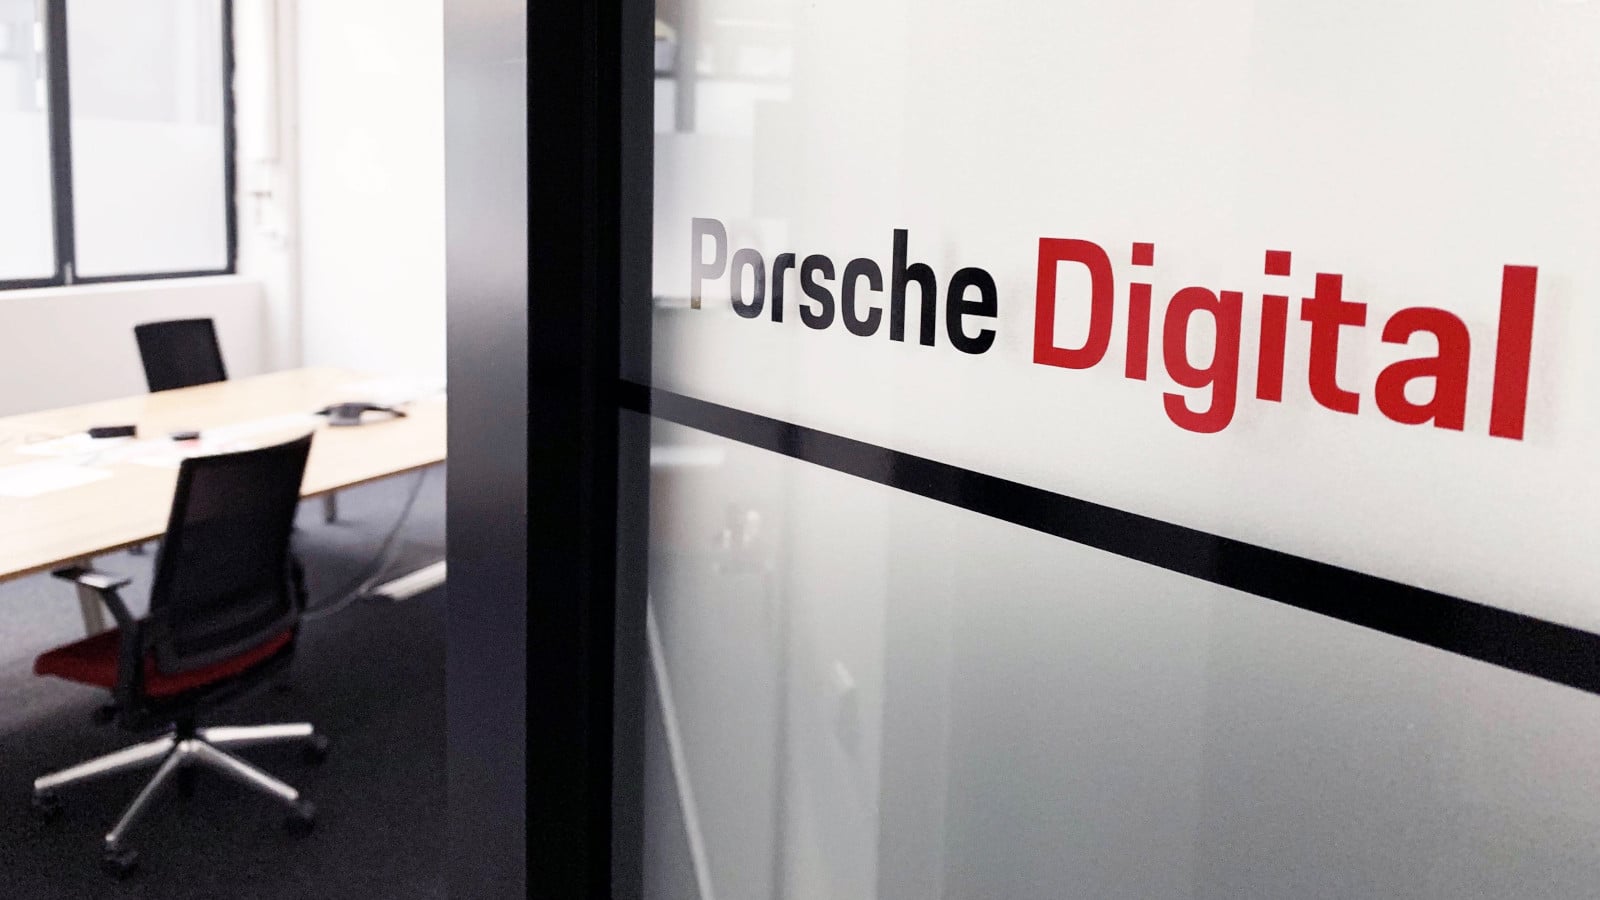 Porsche Digital abre una nueva oficina